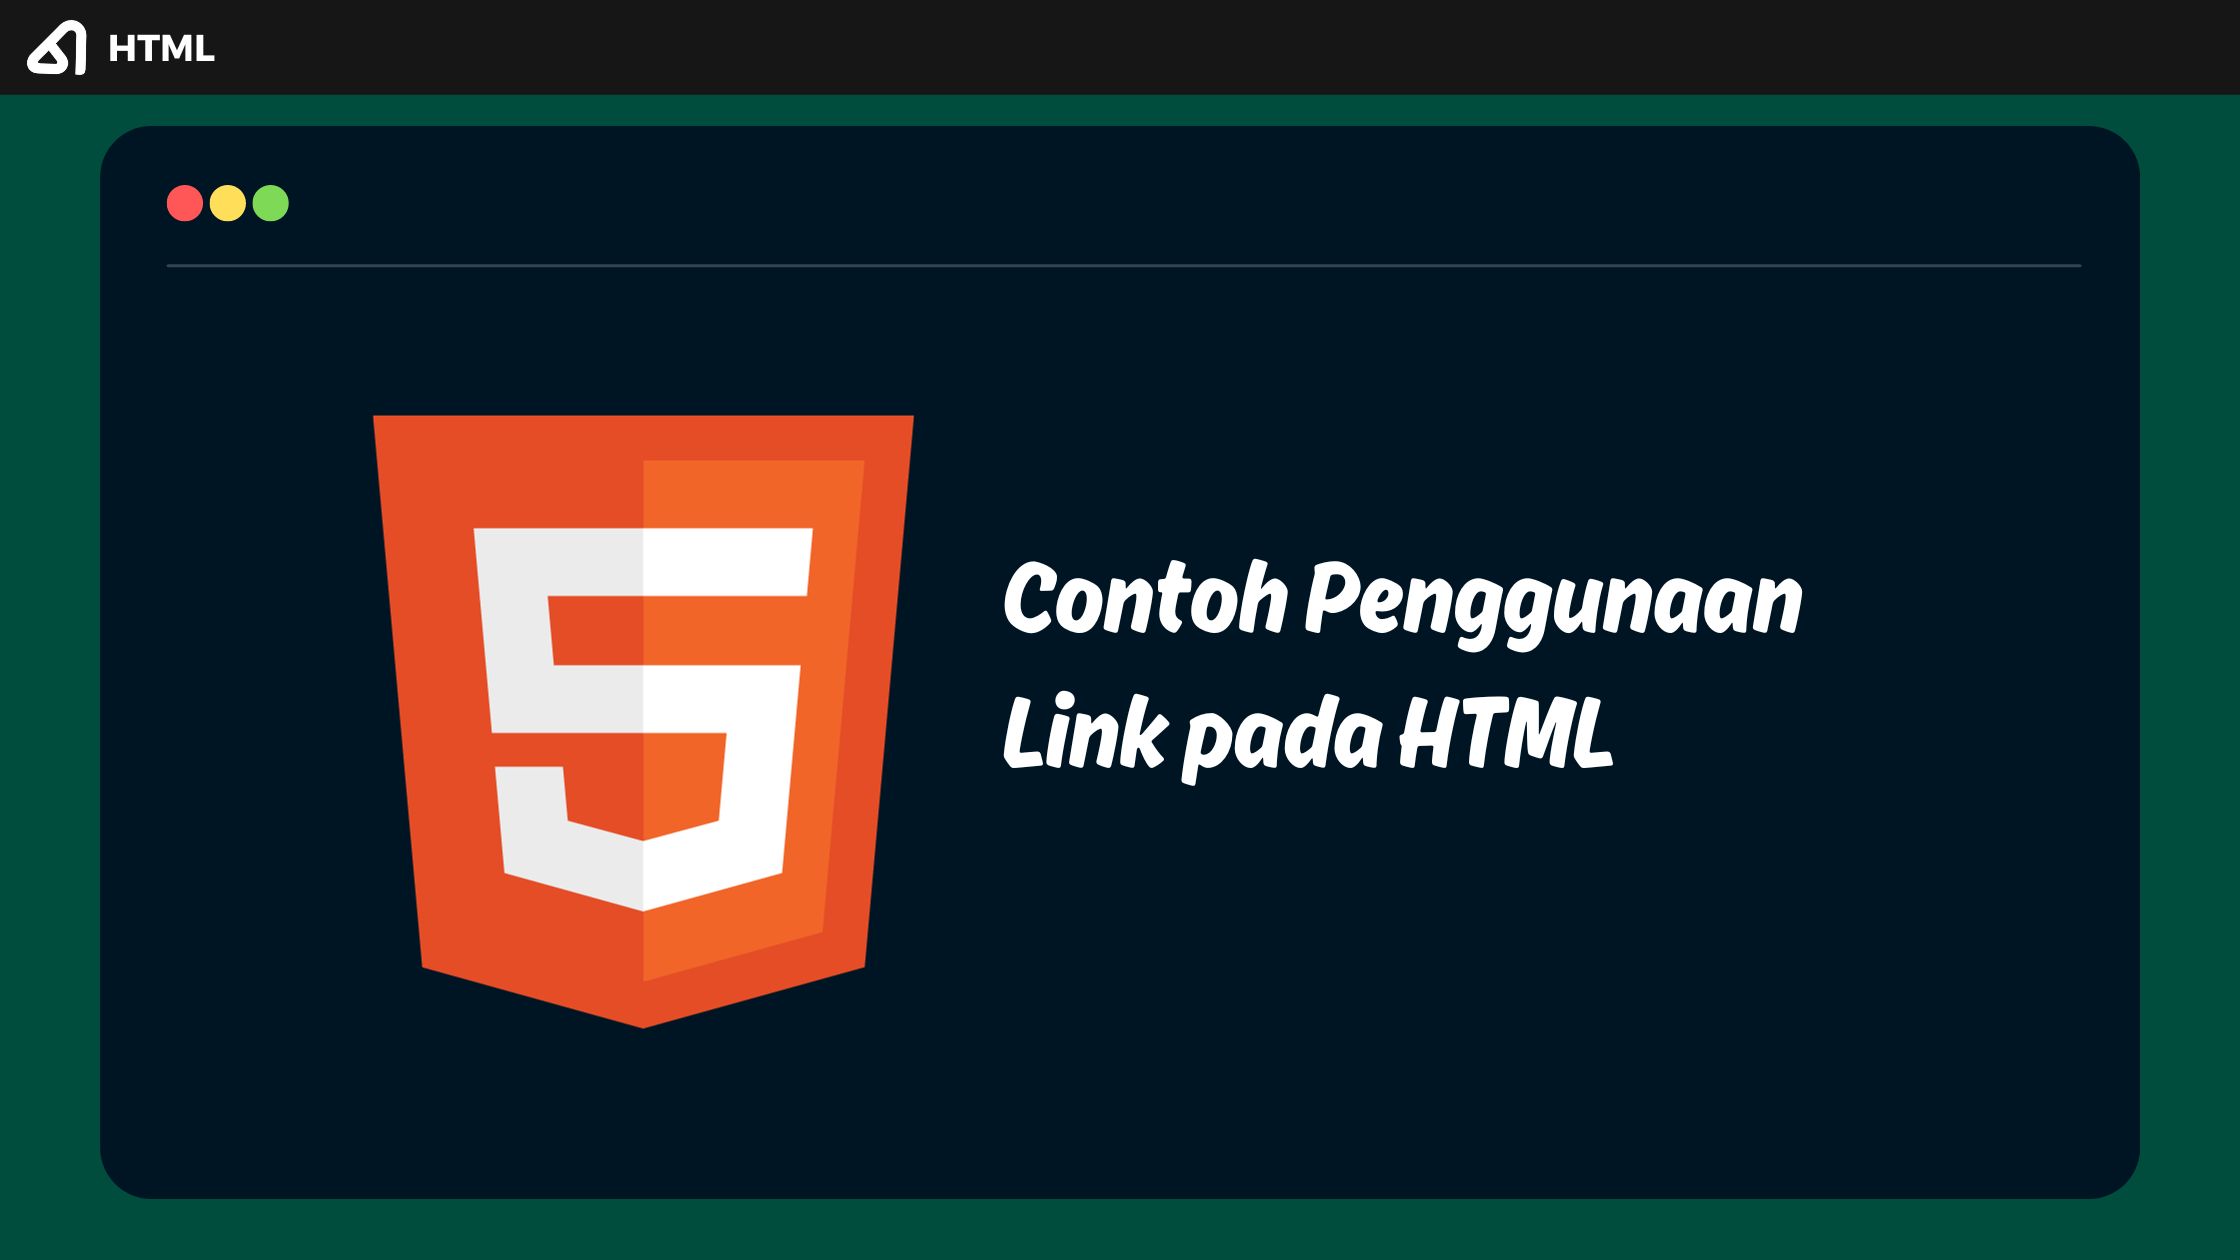 Contoh Penggunaan Link pada HTML